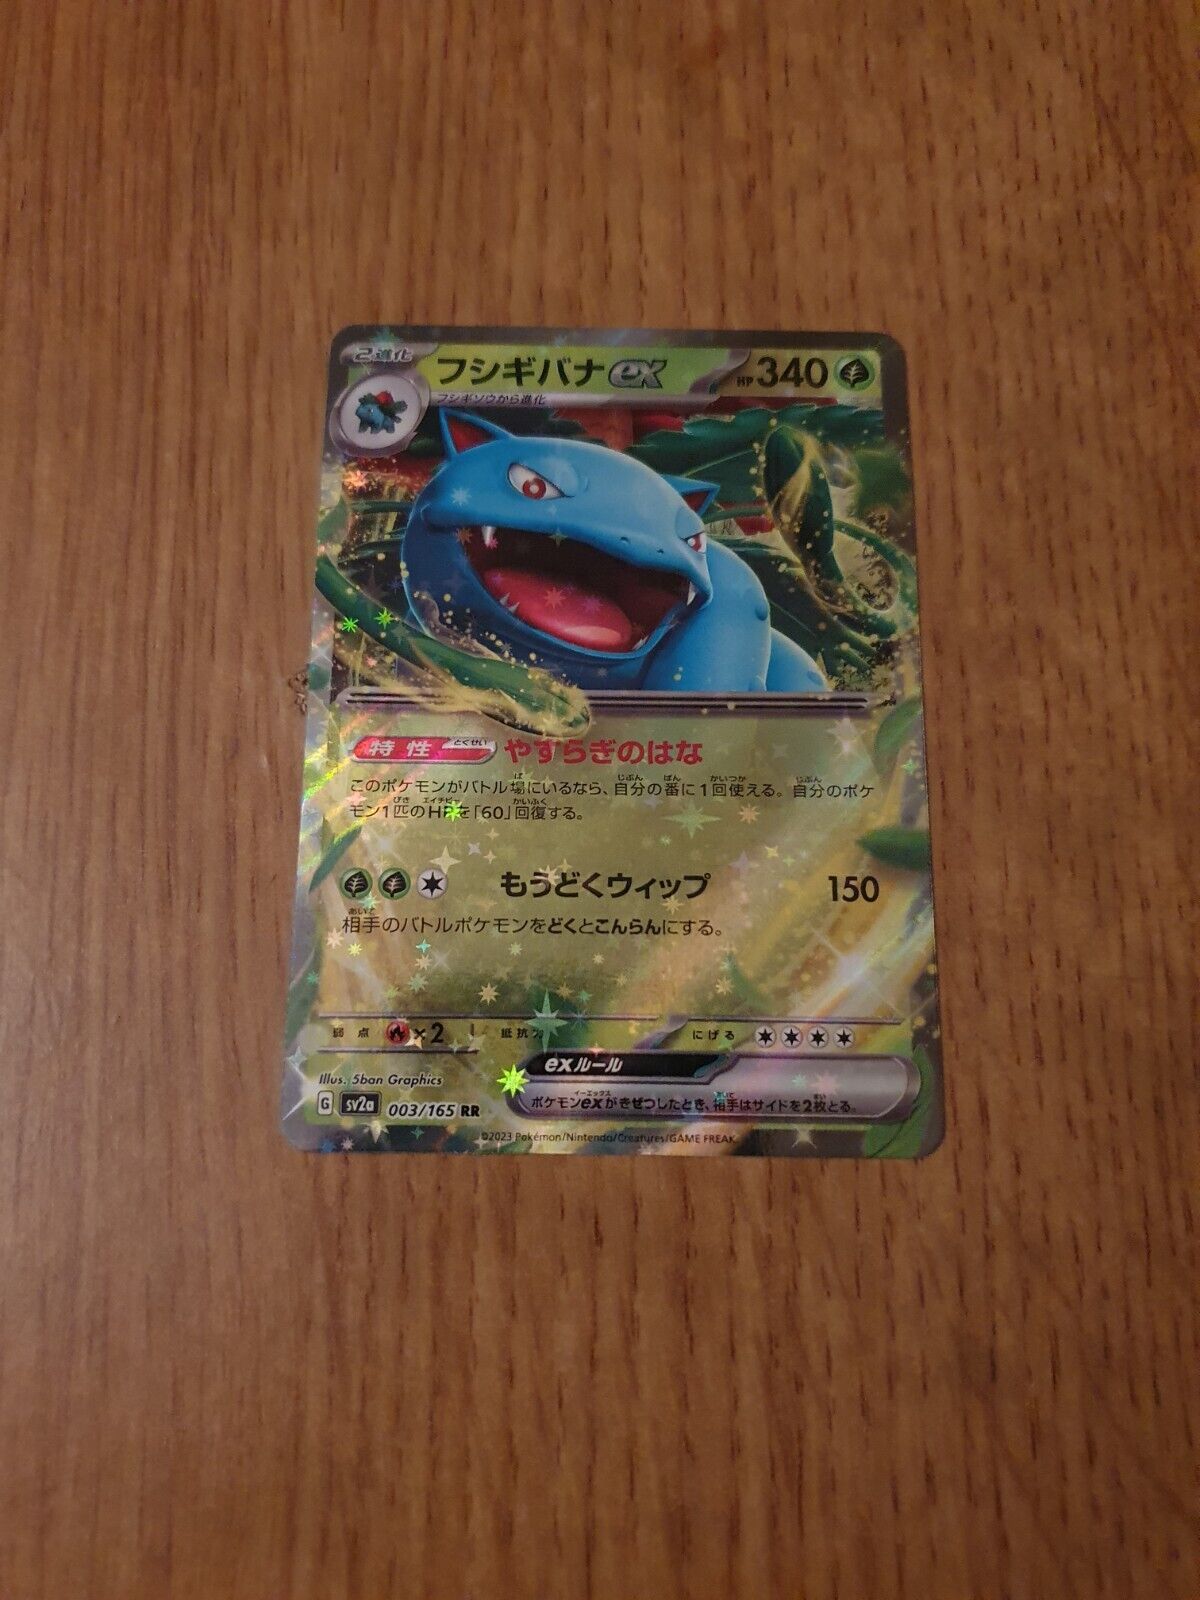 Pokémon 151 TCG Venusaur ex 003/165 NM/Mint 